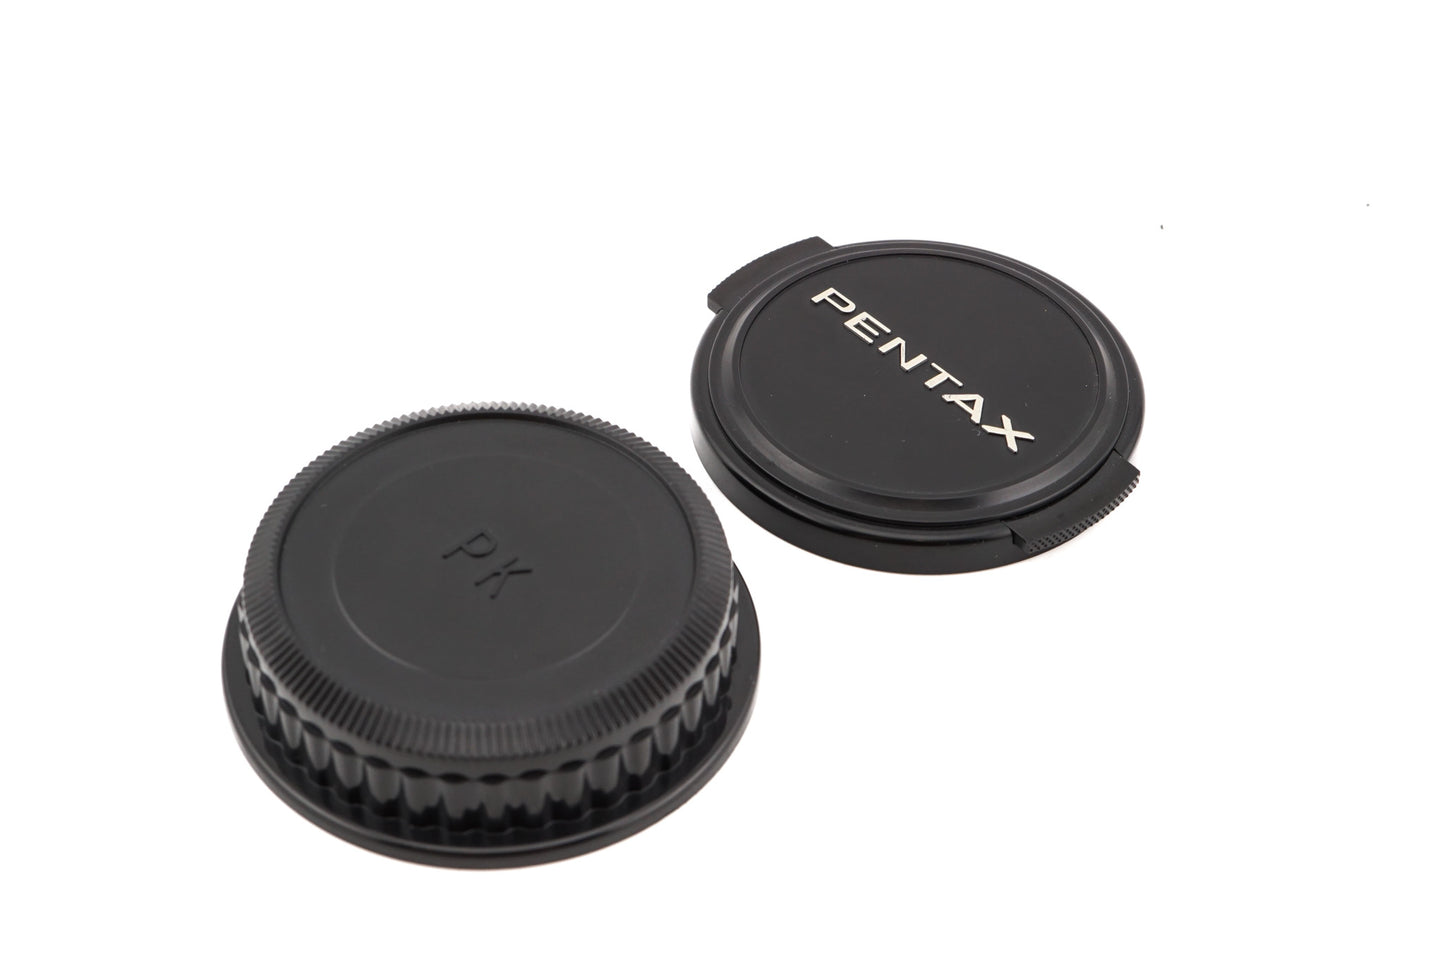 Pentax 28mm f2.8 SMC Pentax-M